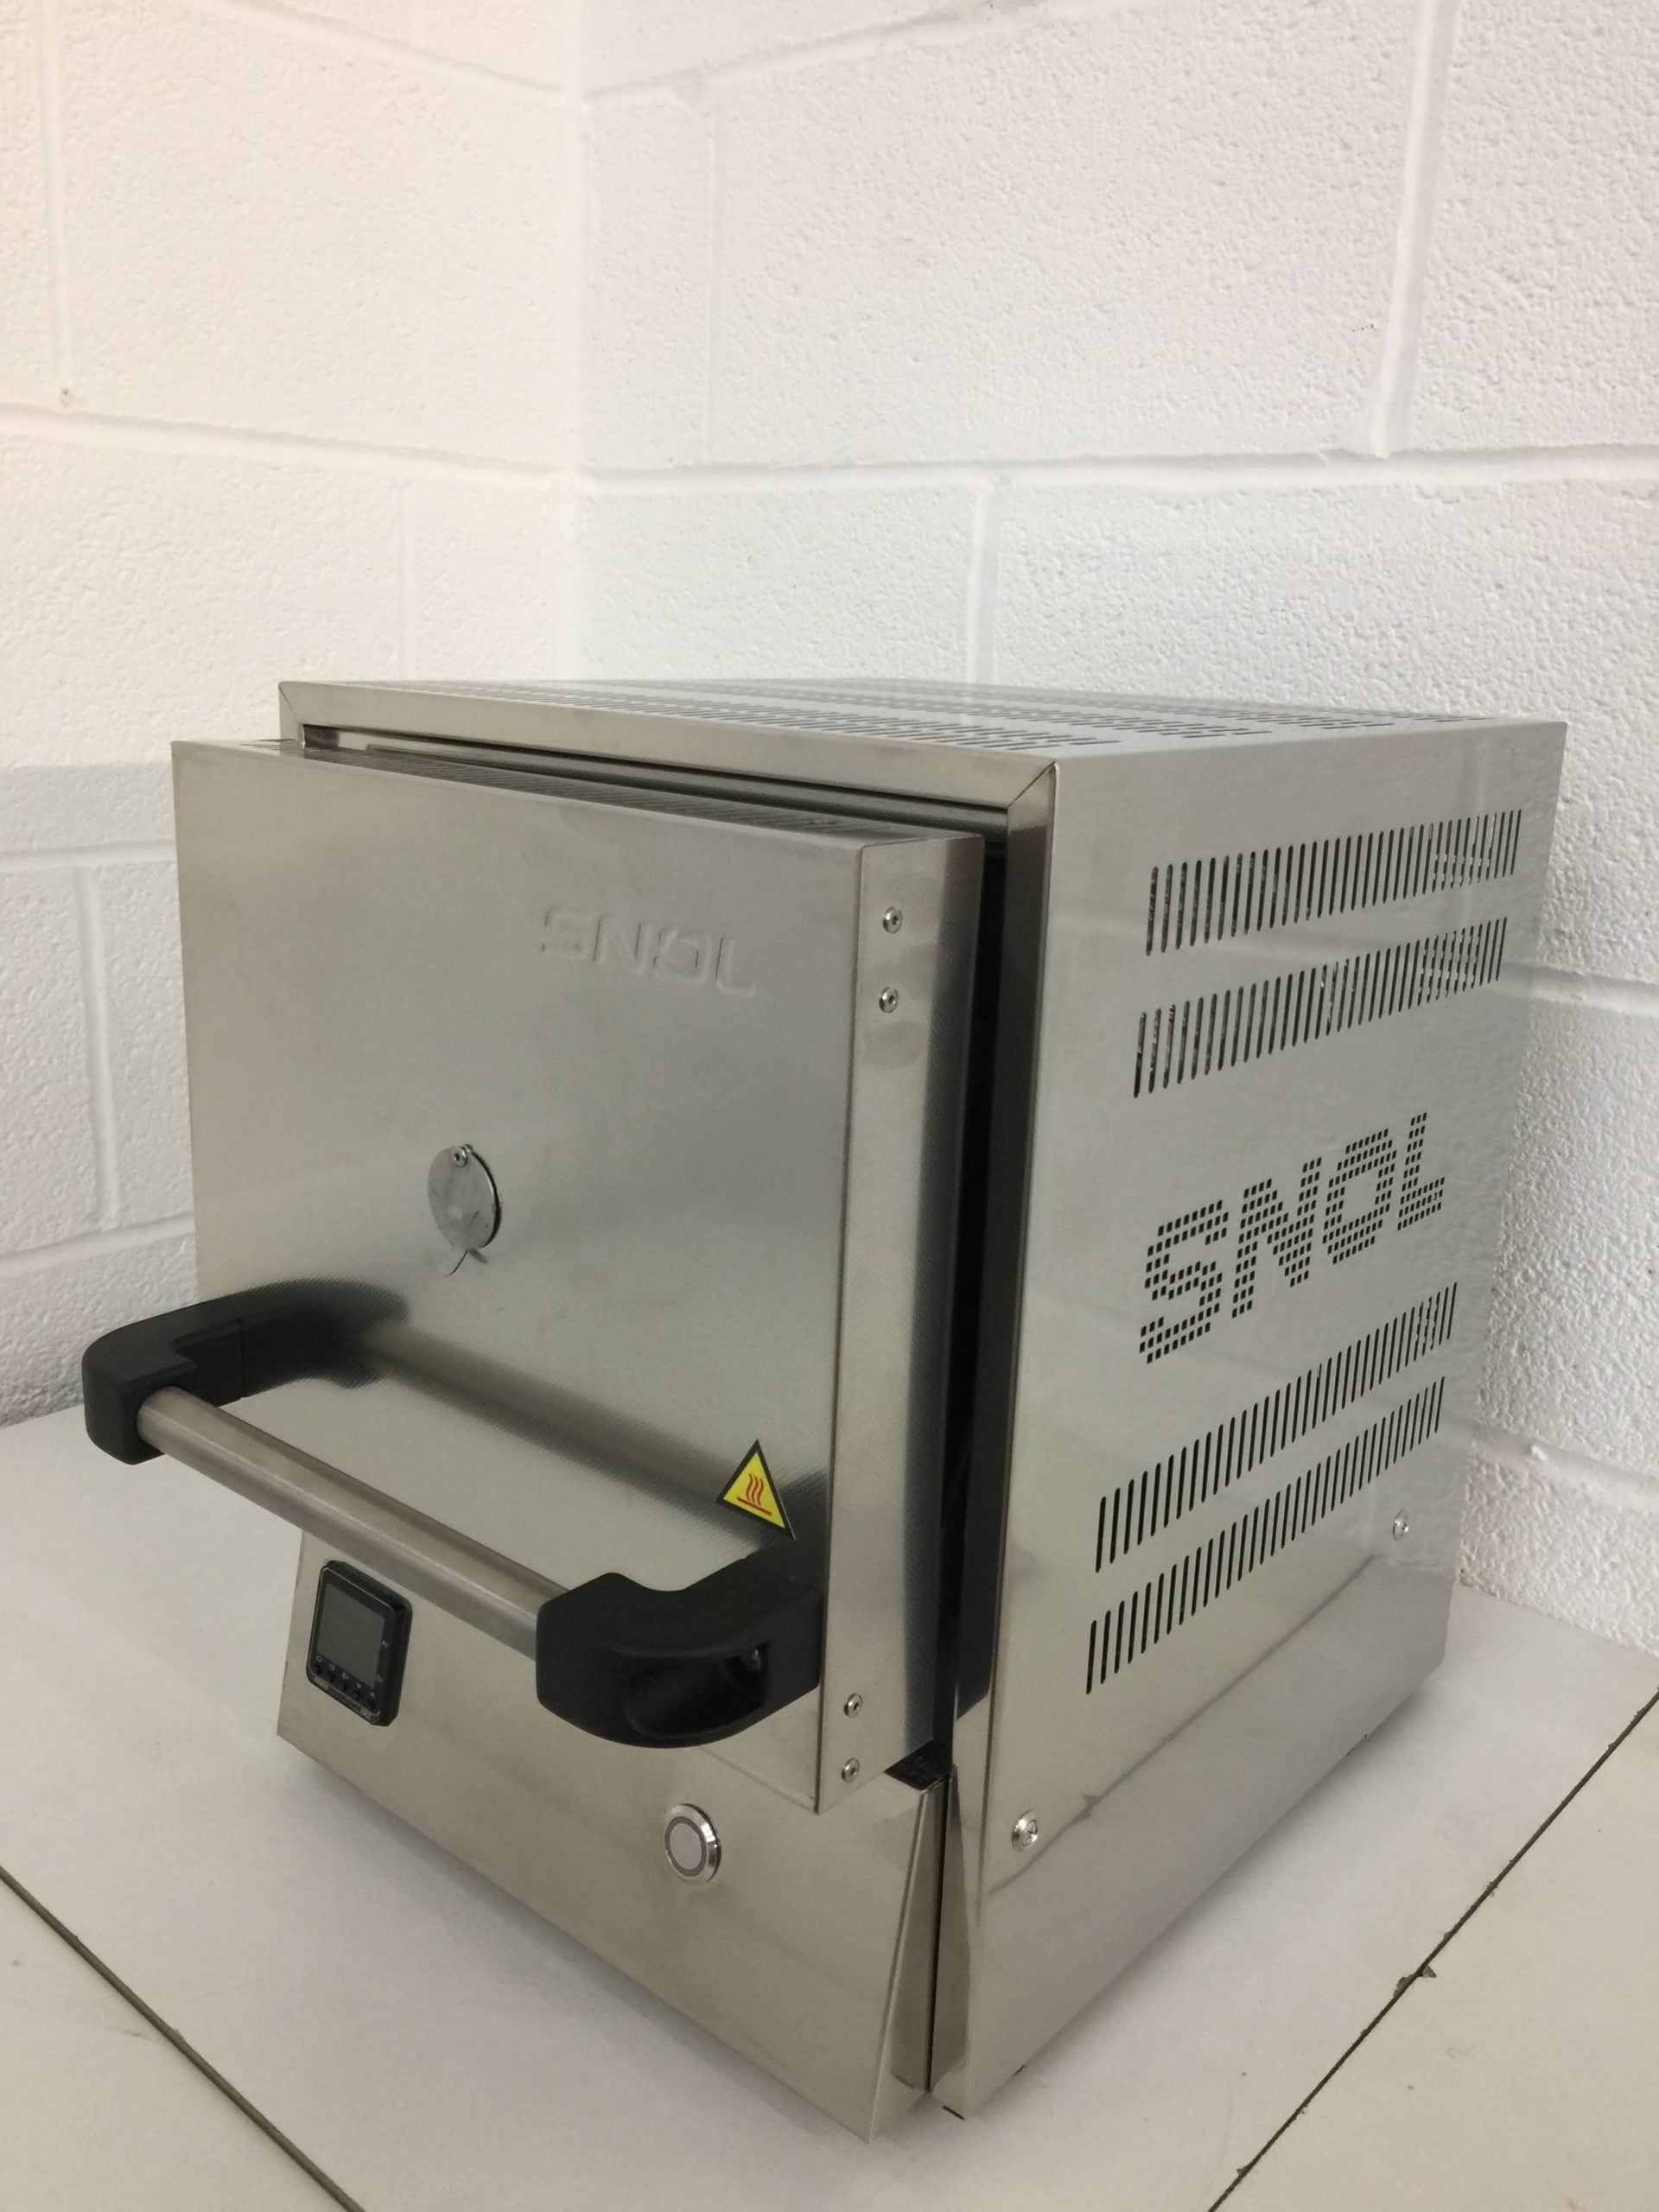 snol 3/1100 high temperature furnace